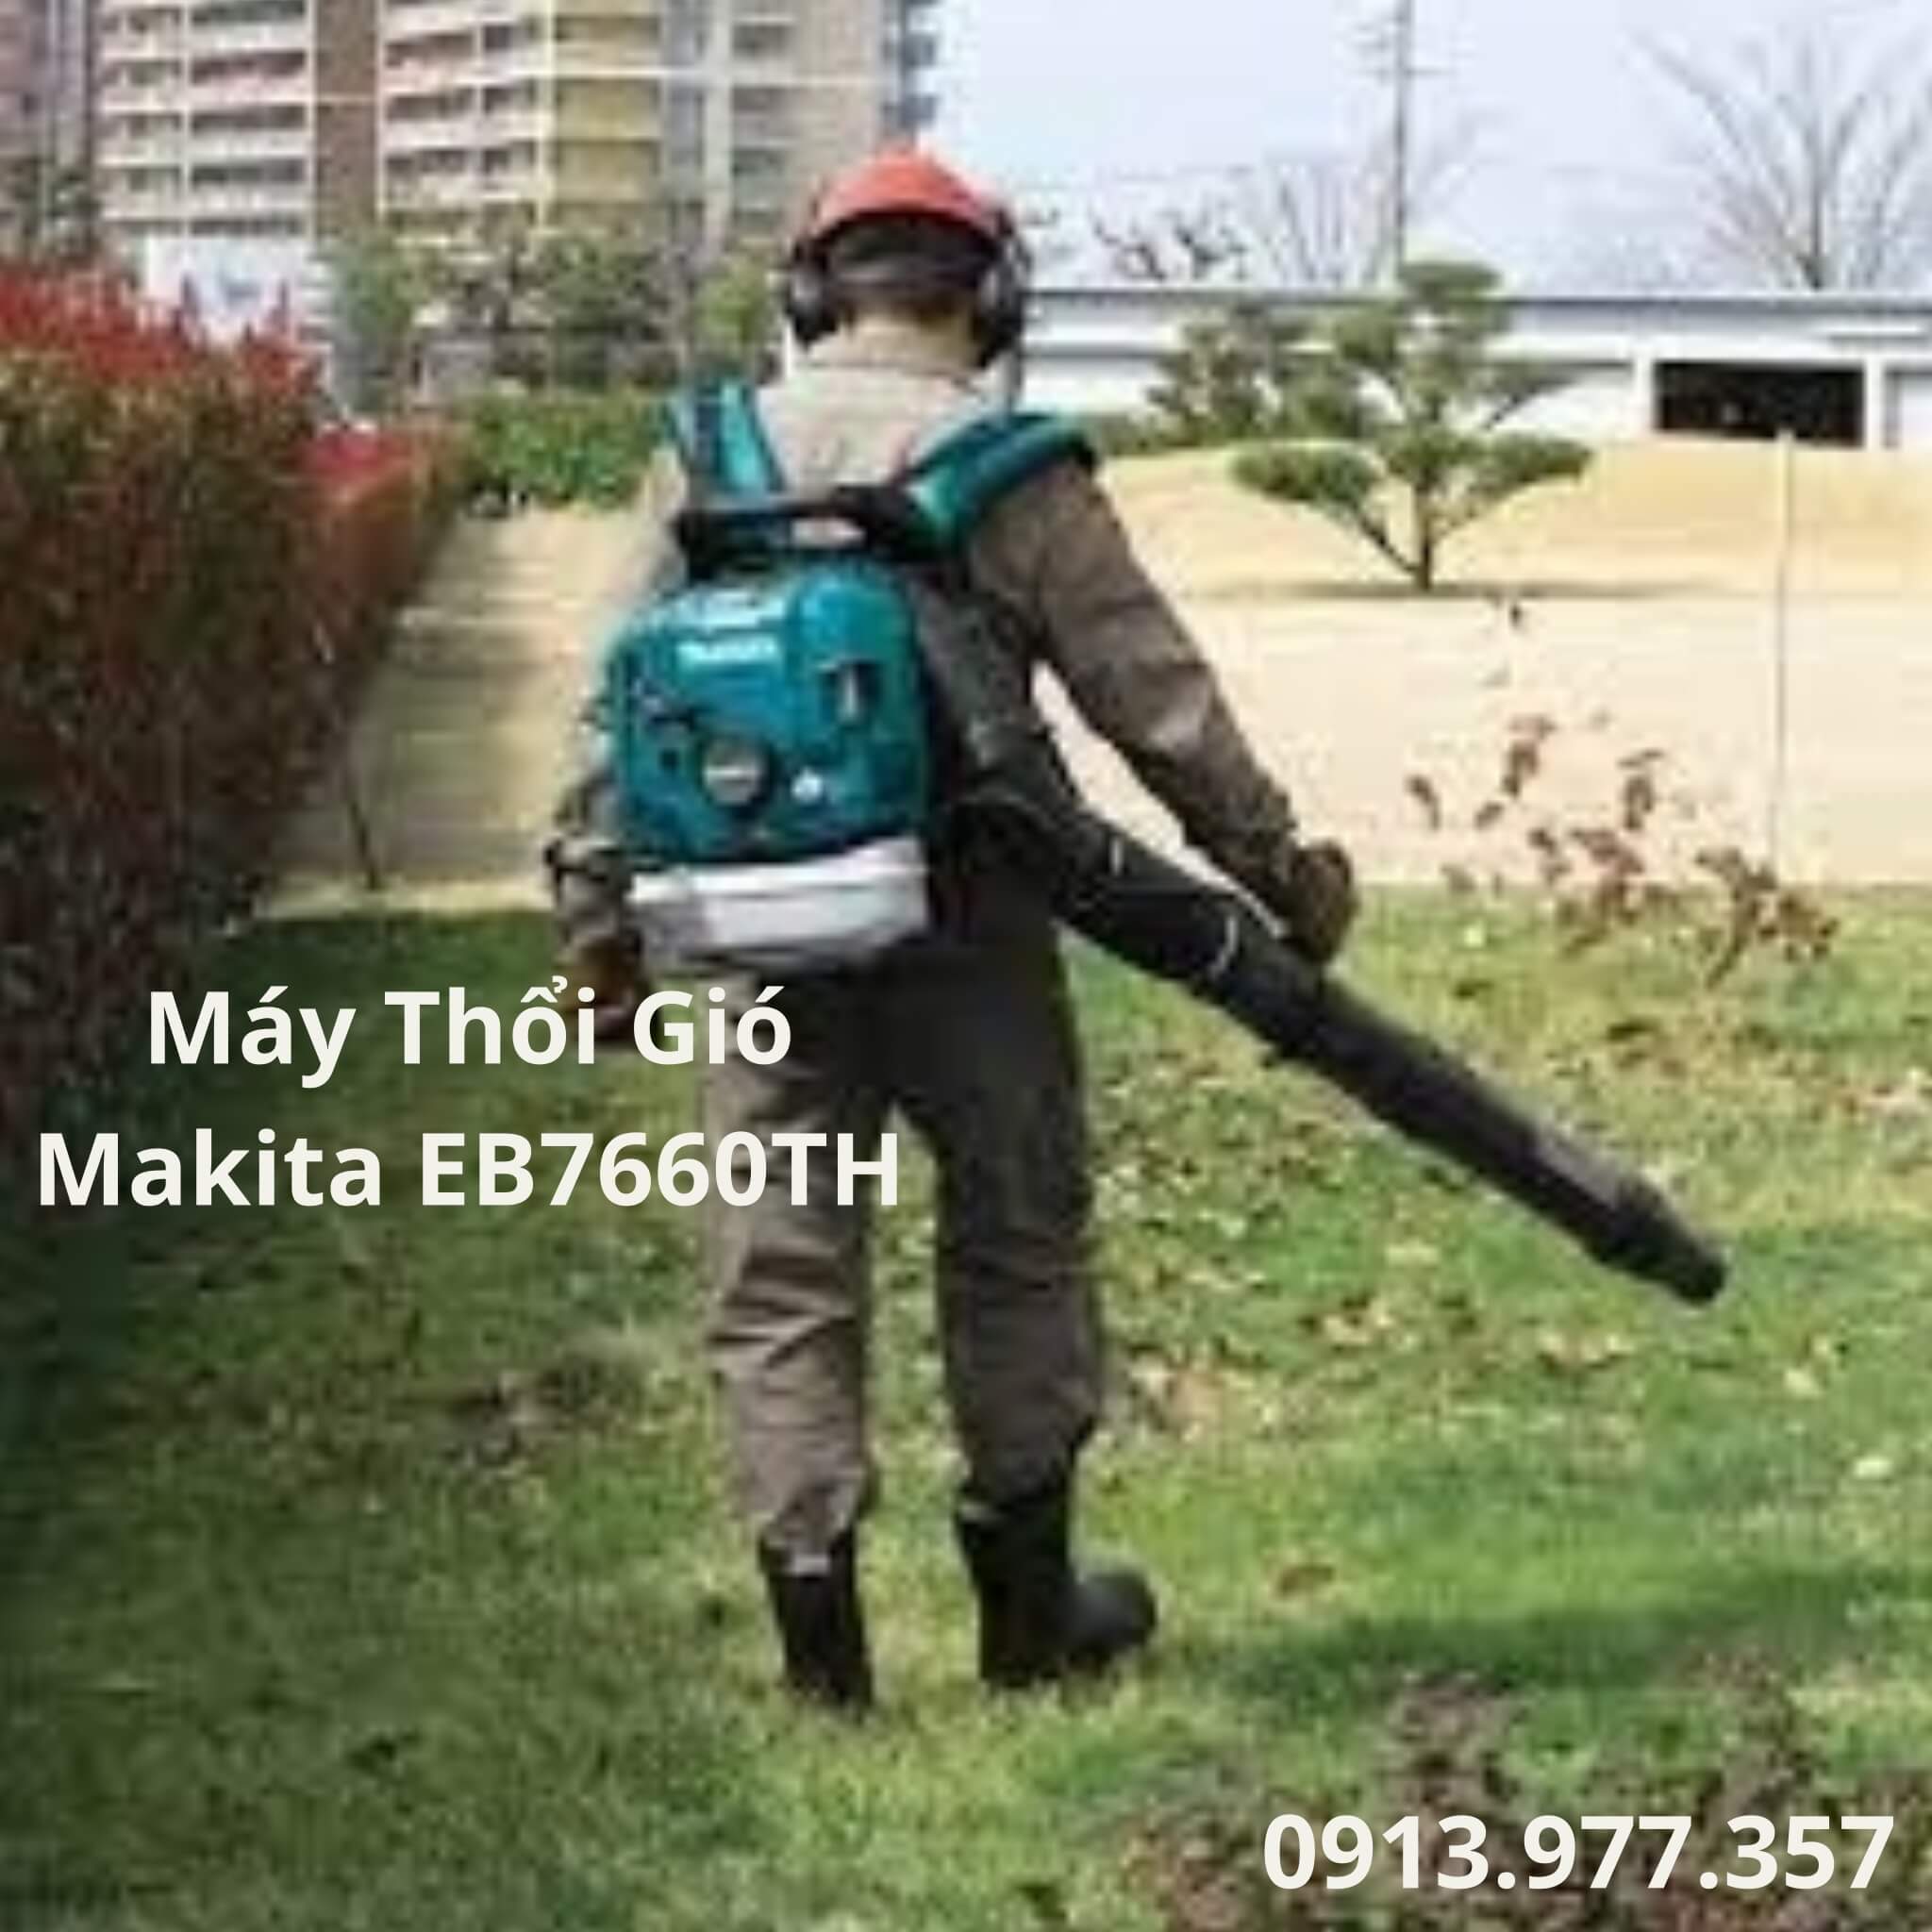 may-thoi-gio-chay-xang-makita-eb7660th